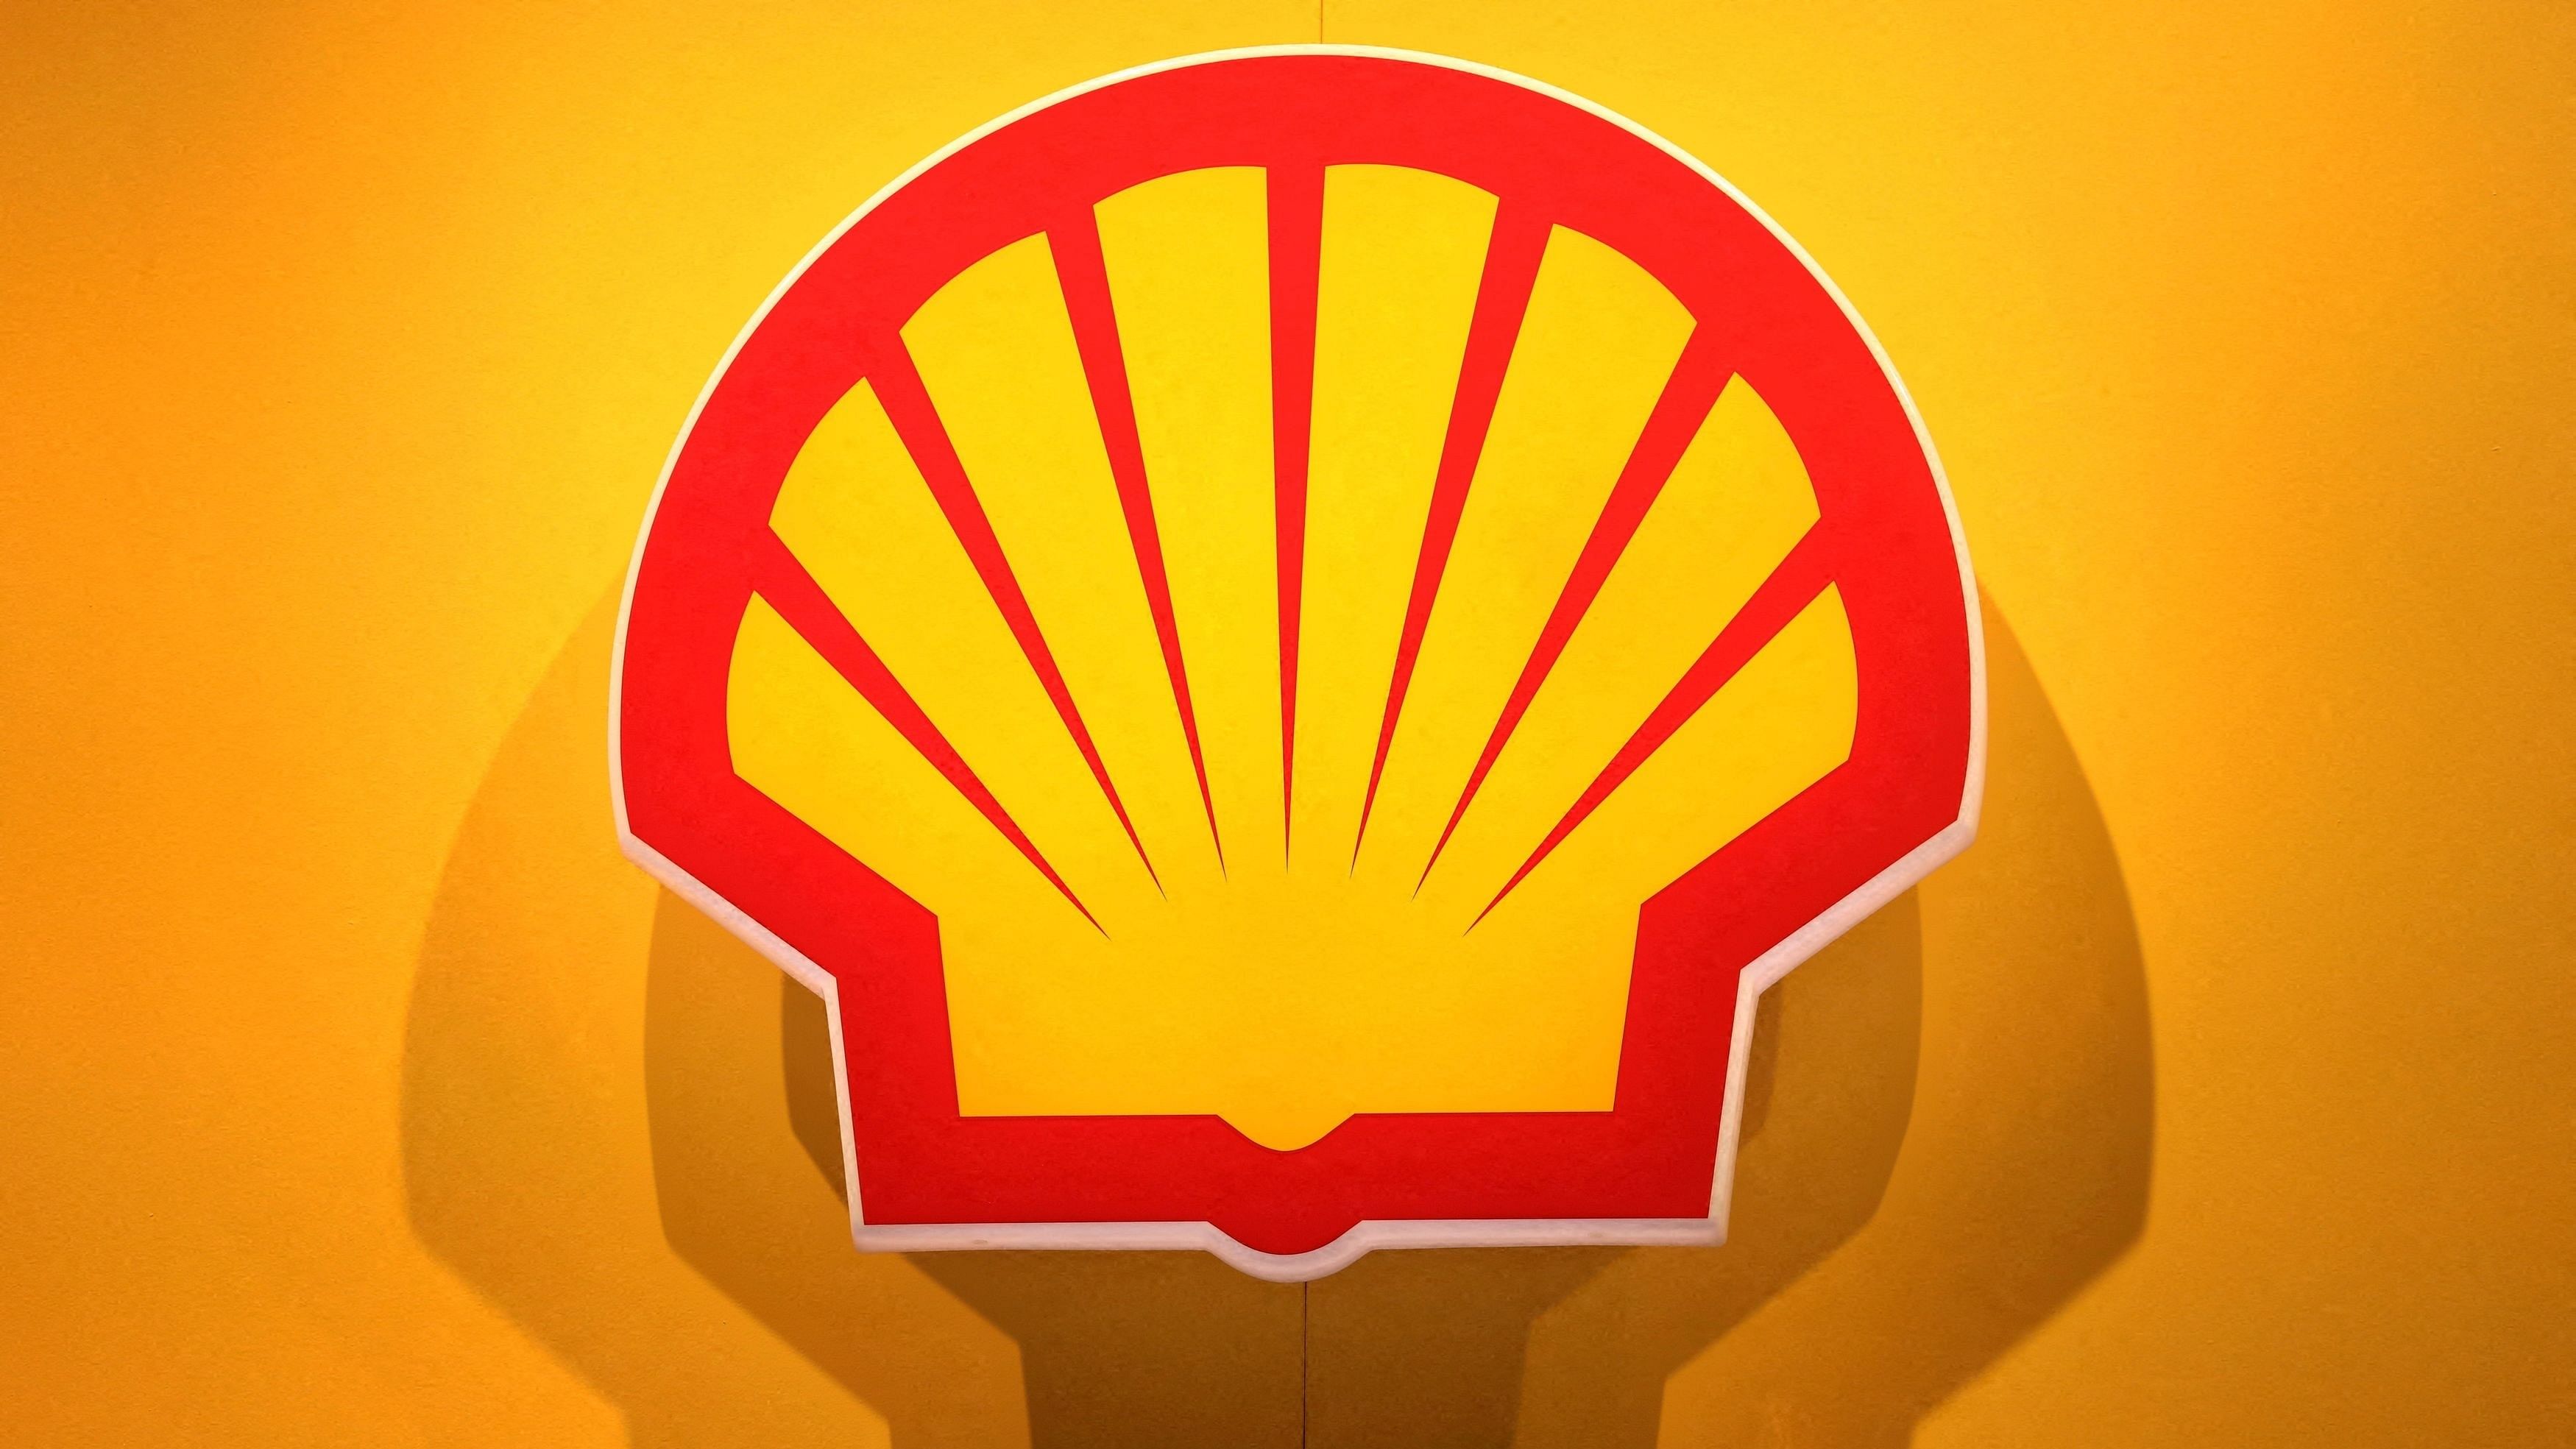 <div class="paragraphs"><p>The logo of Shell.</p></div>